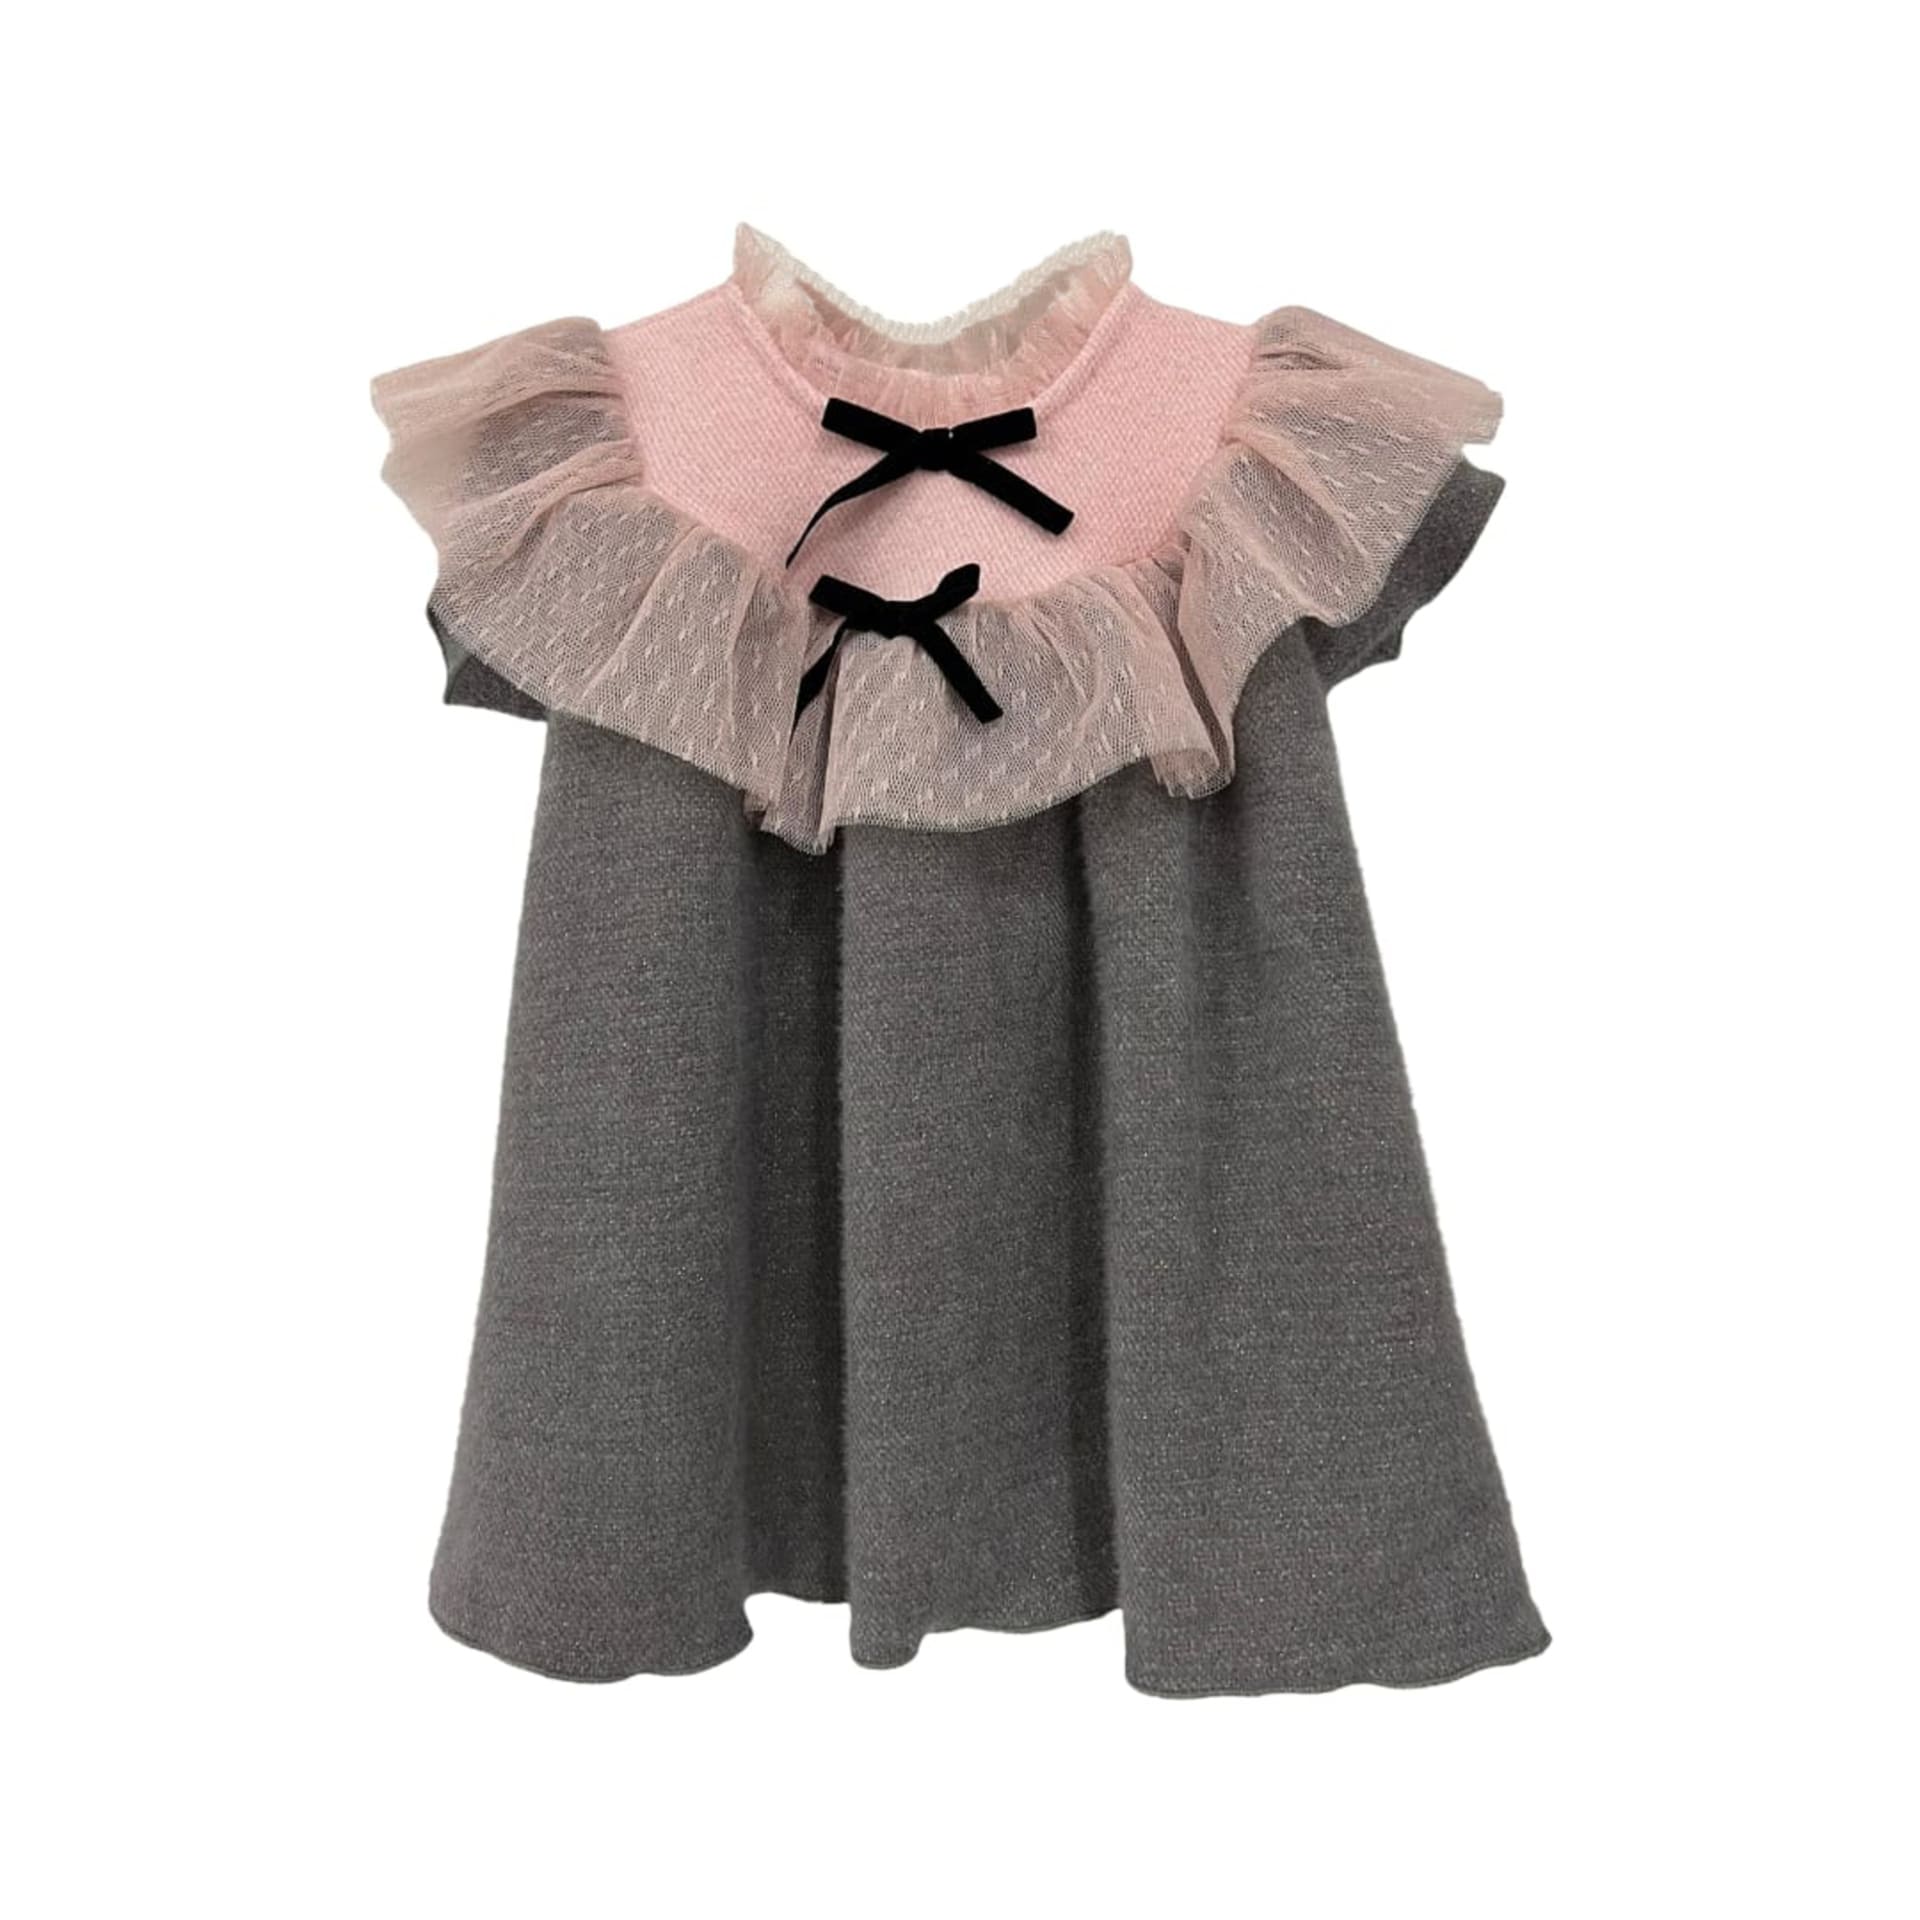 Robe en jersey gris avec tule rose